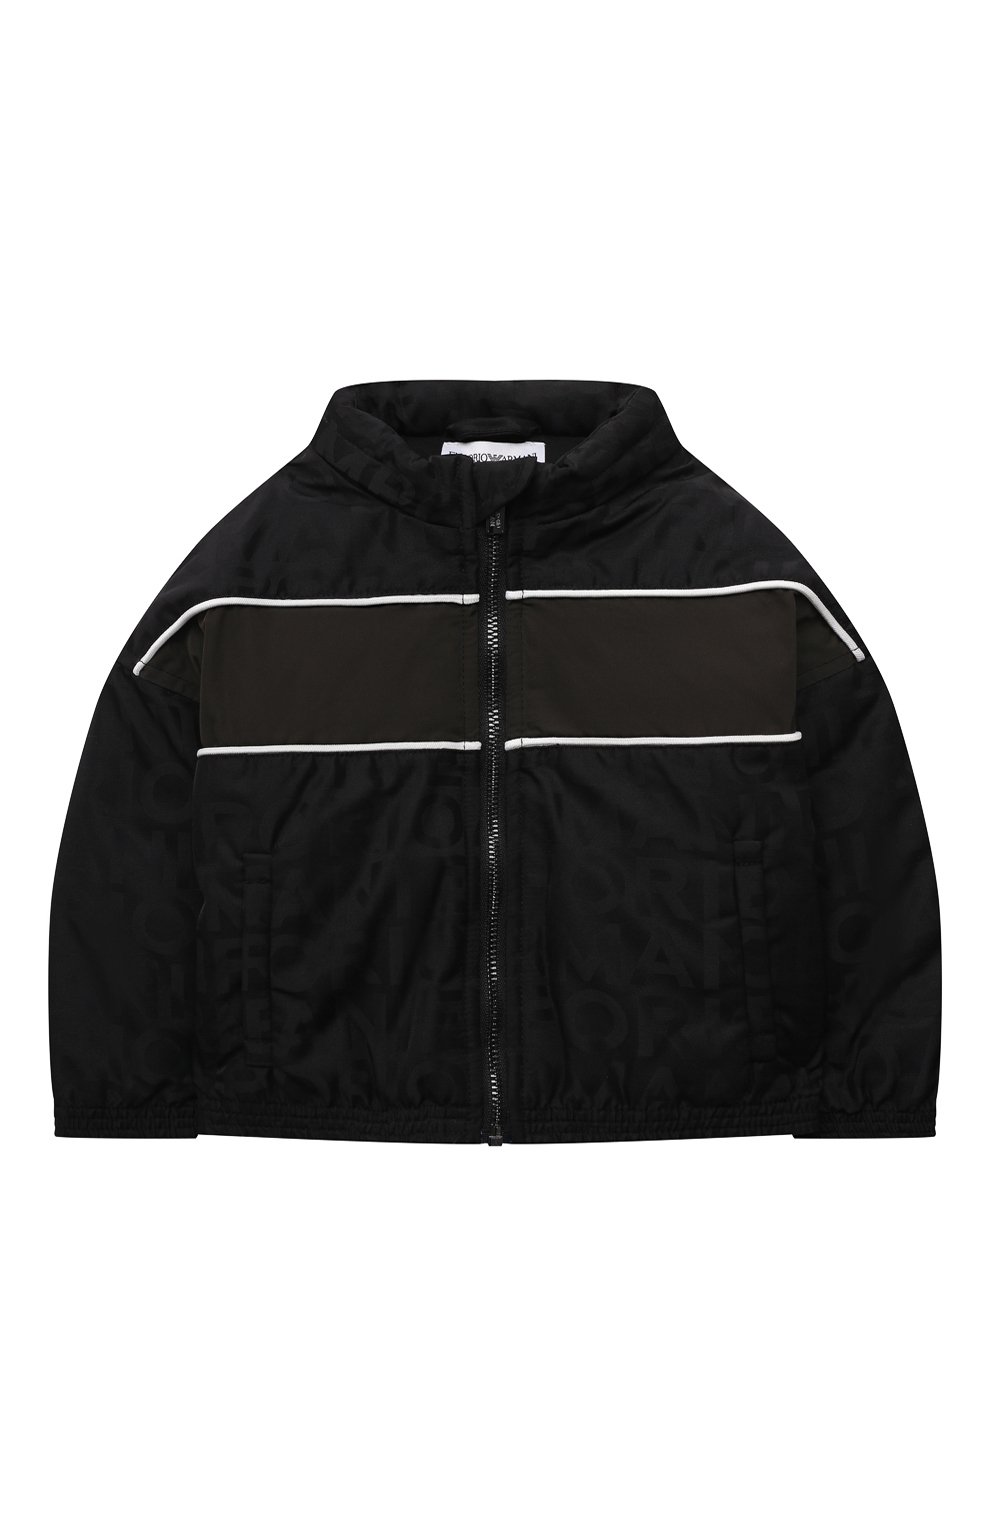 Верхняя одежда Emporio Armani, Куртка Emporio Armani, Китай (Китайская Народная Республика), Чёрный, Подкладка-хлопок: 100%; Наполнитель-полиэстер: 100%; Полиэстер: 100%;, 12103391  - купить